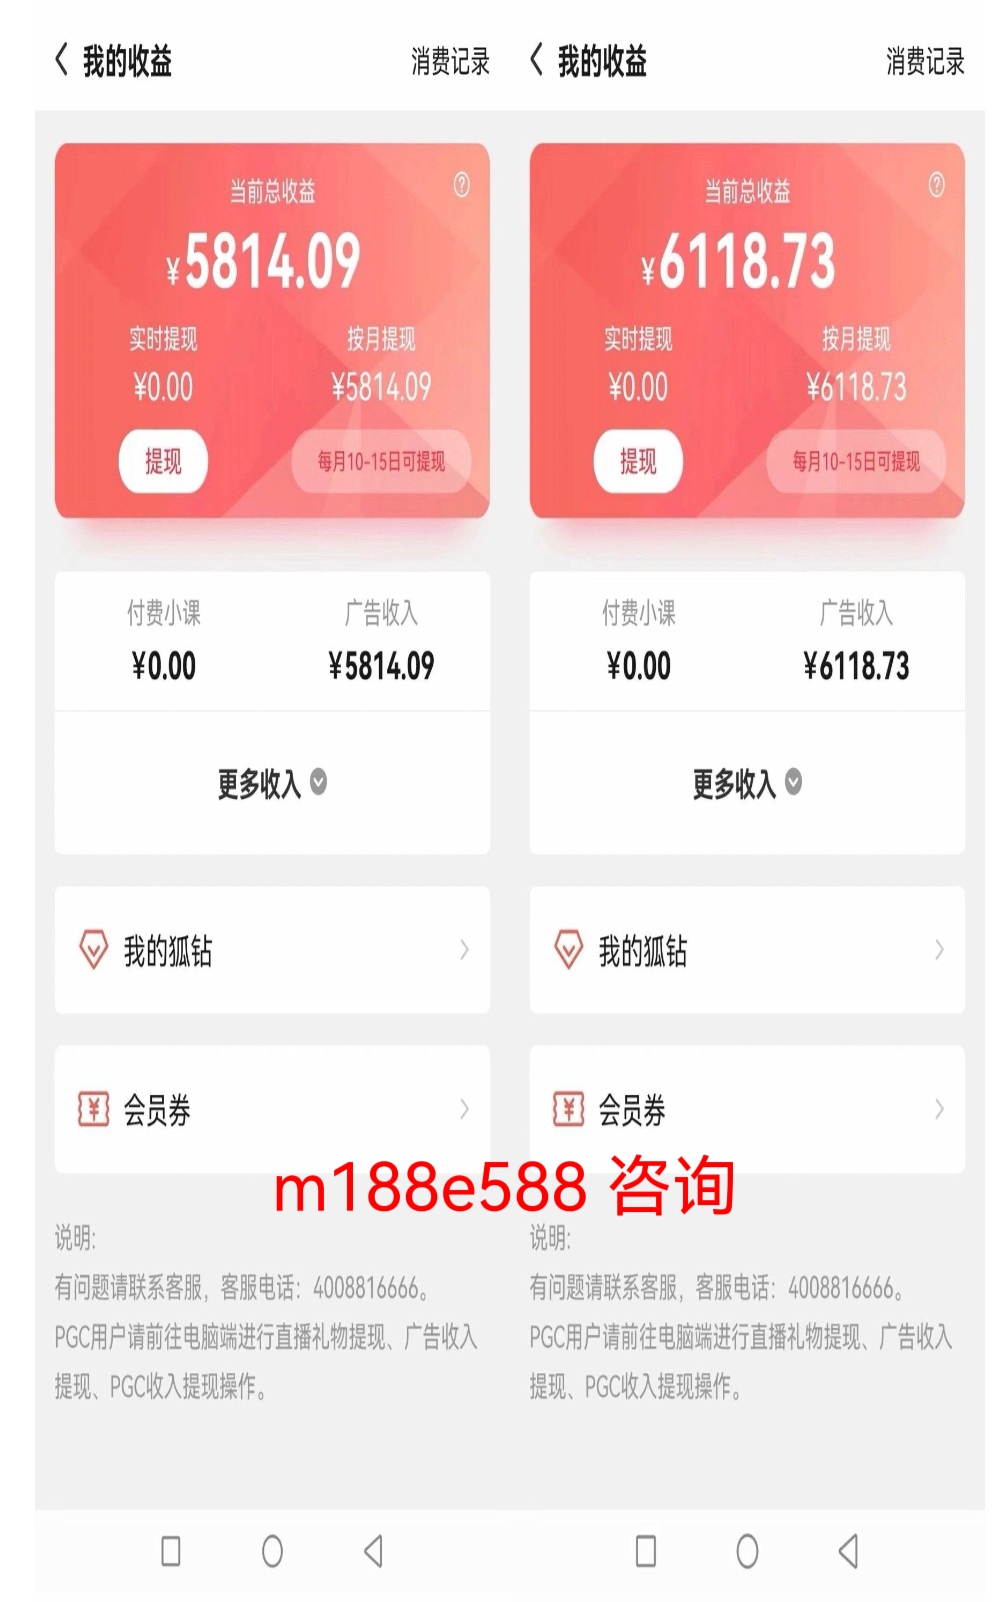 搜狐自媒体脚本挂机详细教程,单日收益1000